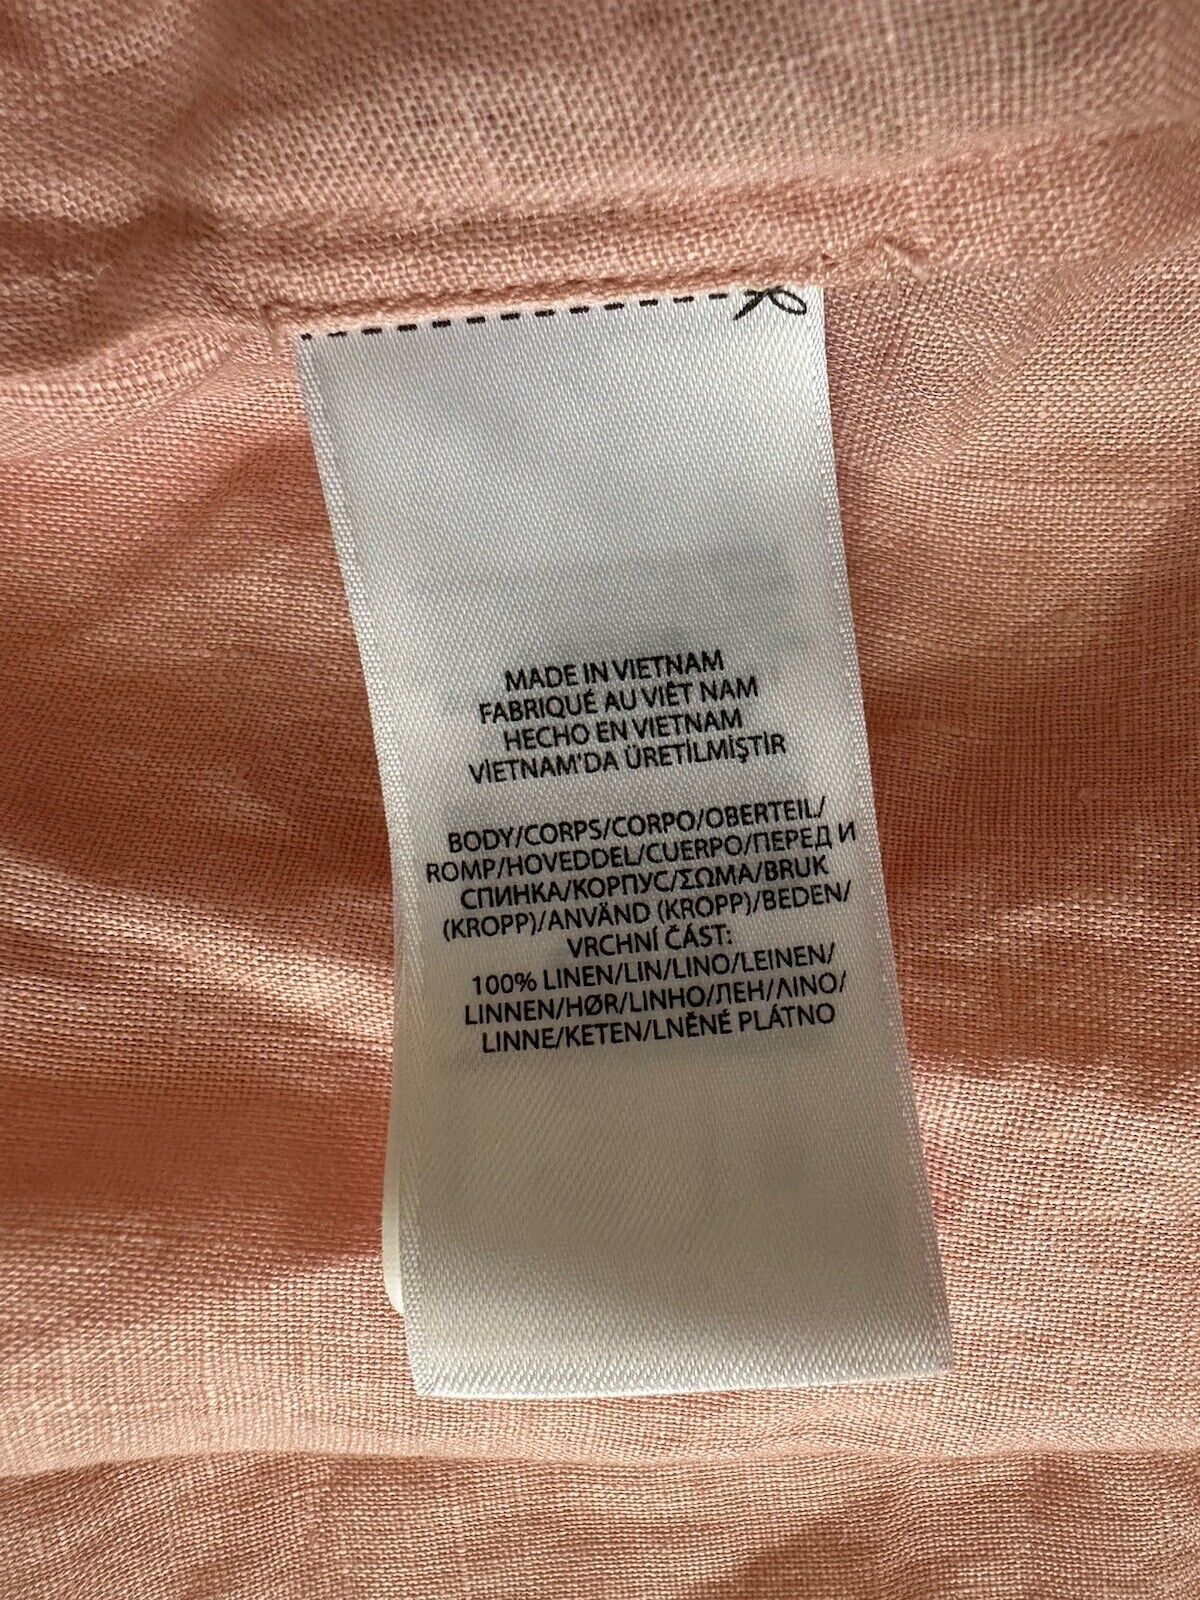 NWT $115 Lauren Ralph Lauren Women’s Linen Long Sleeve Shirt Pale Pink Small